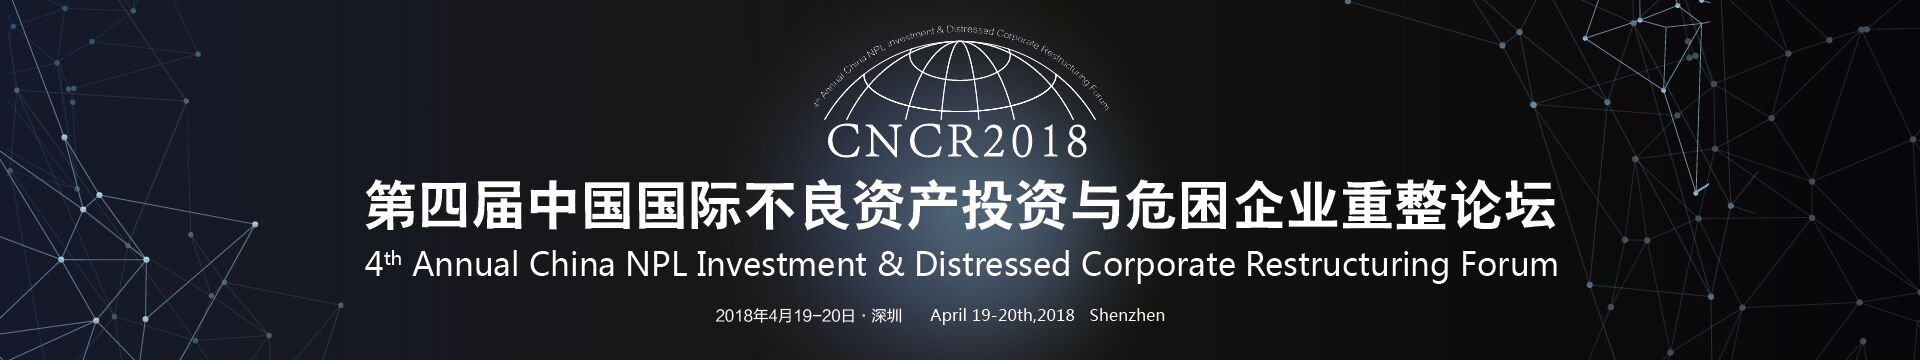 2018第四届中国国际不良资产投资与危困企业重整论坛